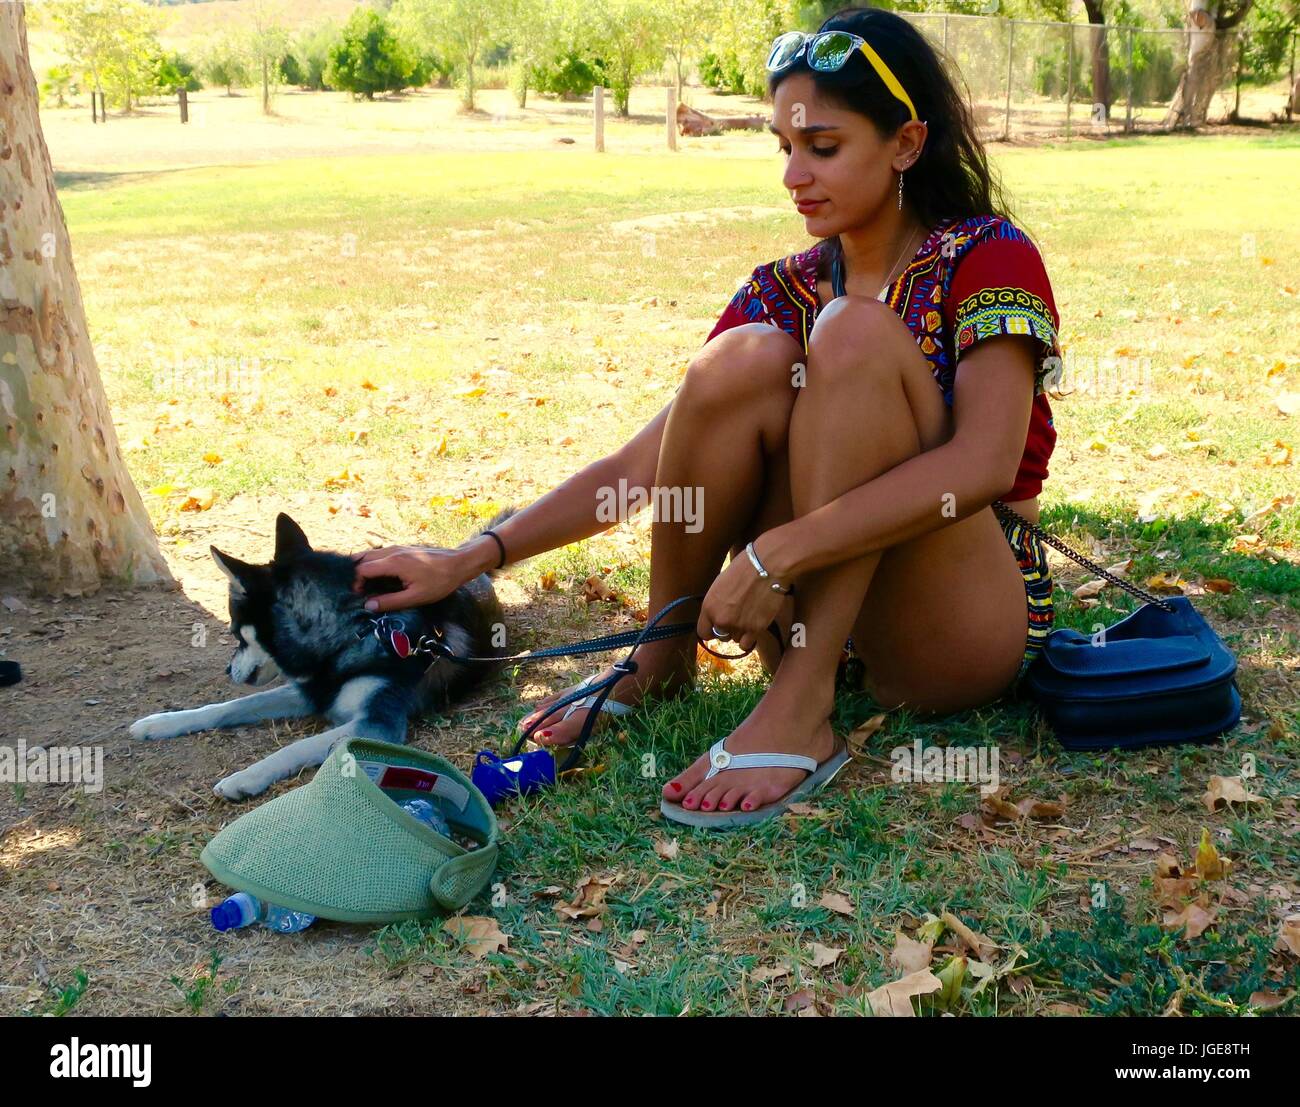 Attraktive bunt gekleideten Frau mit Hund in einem park Stockfoto